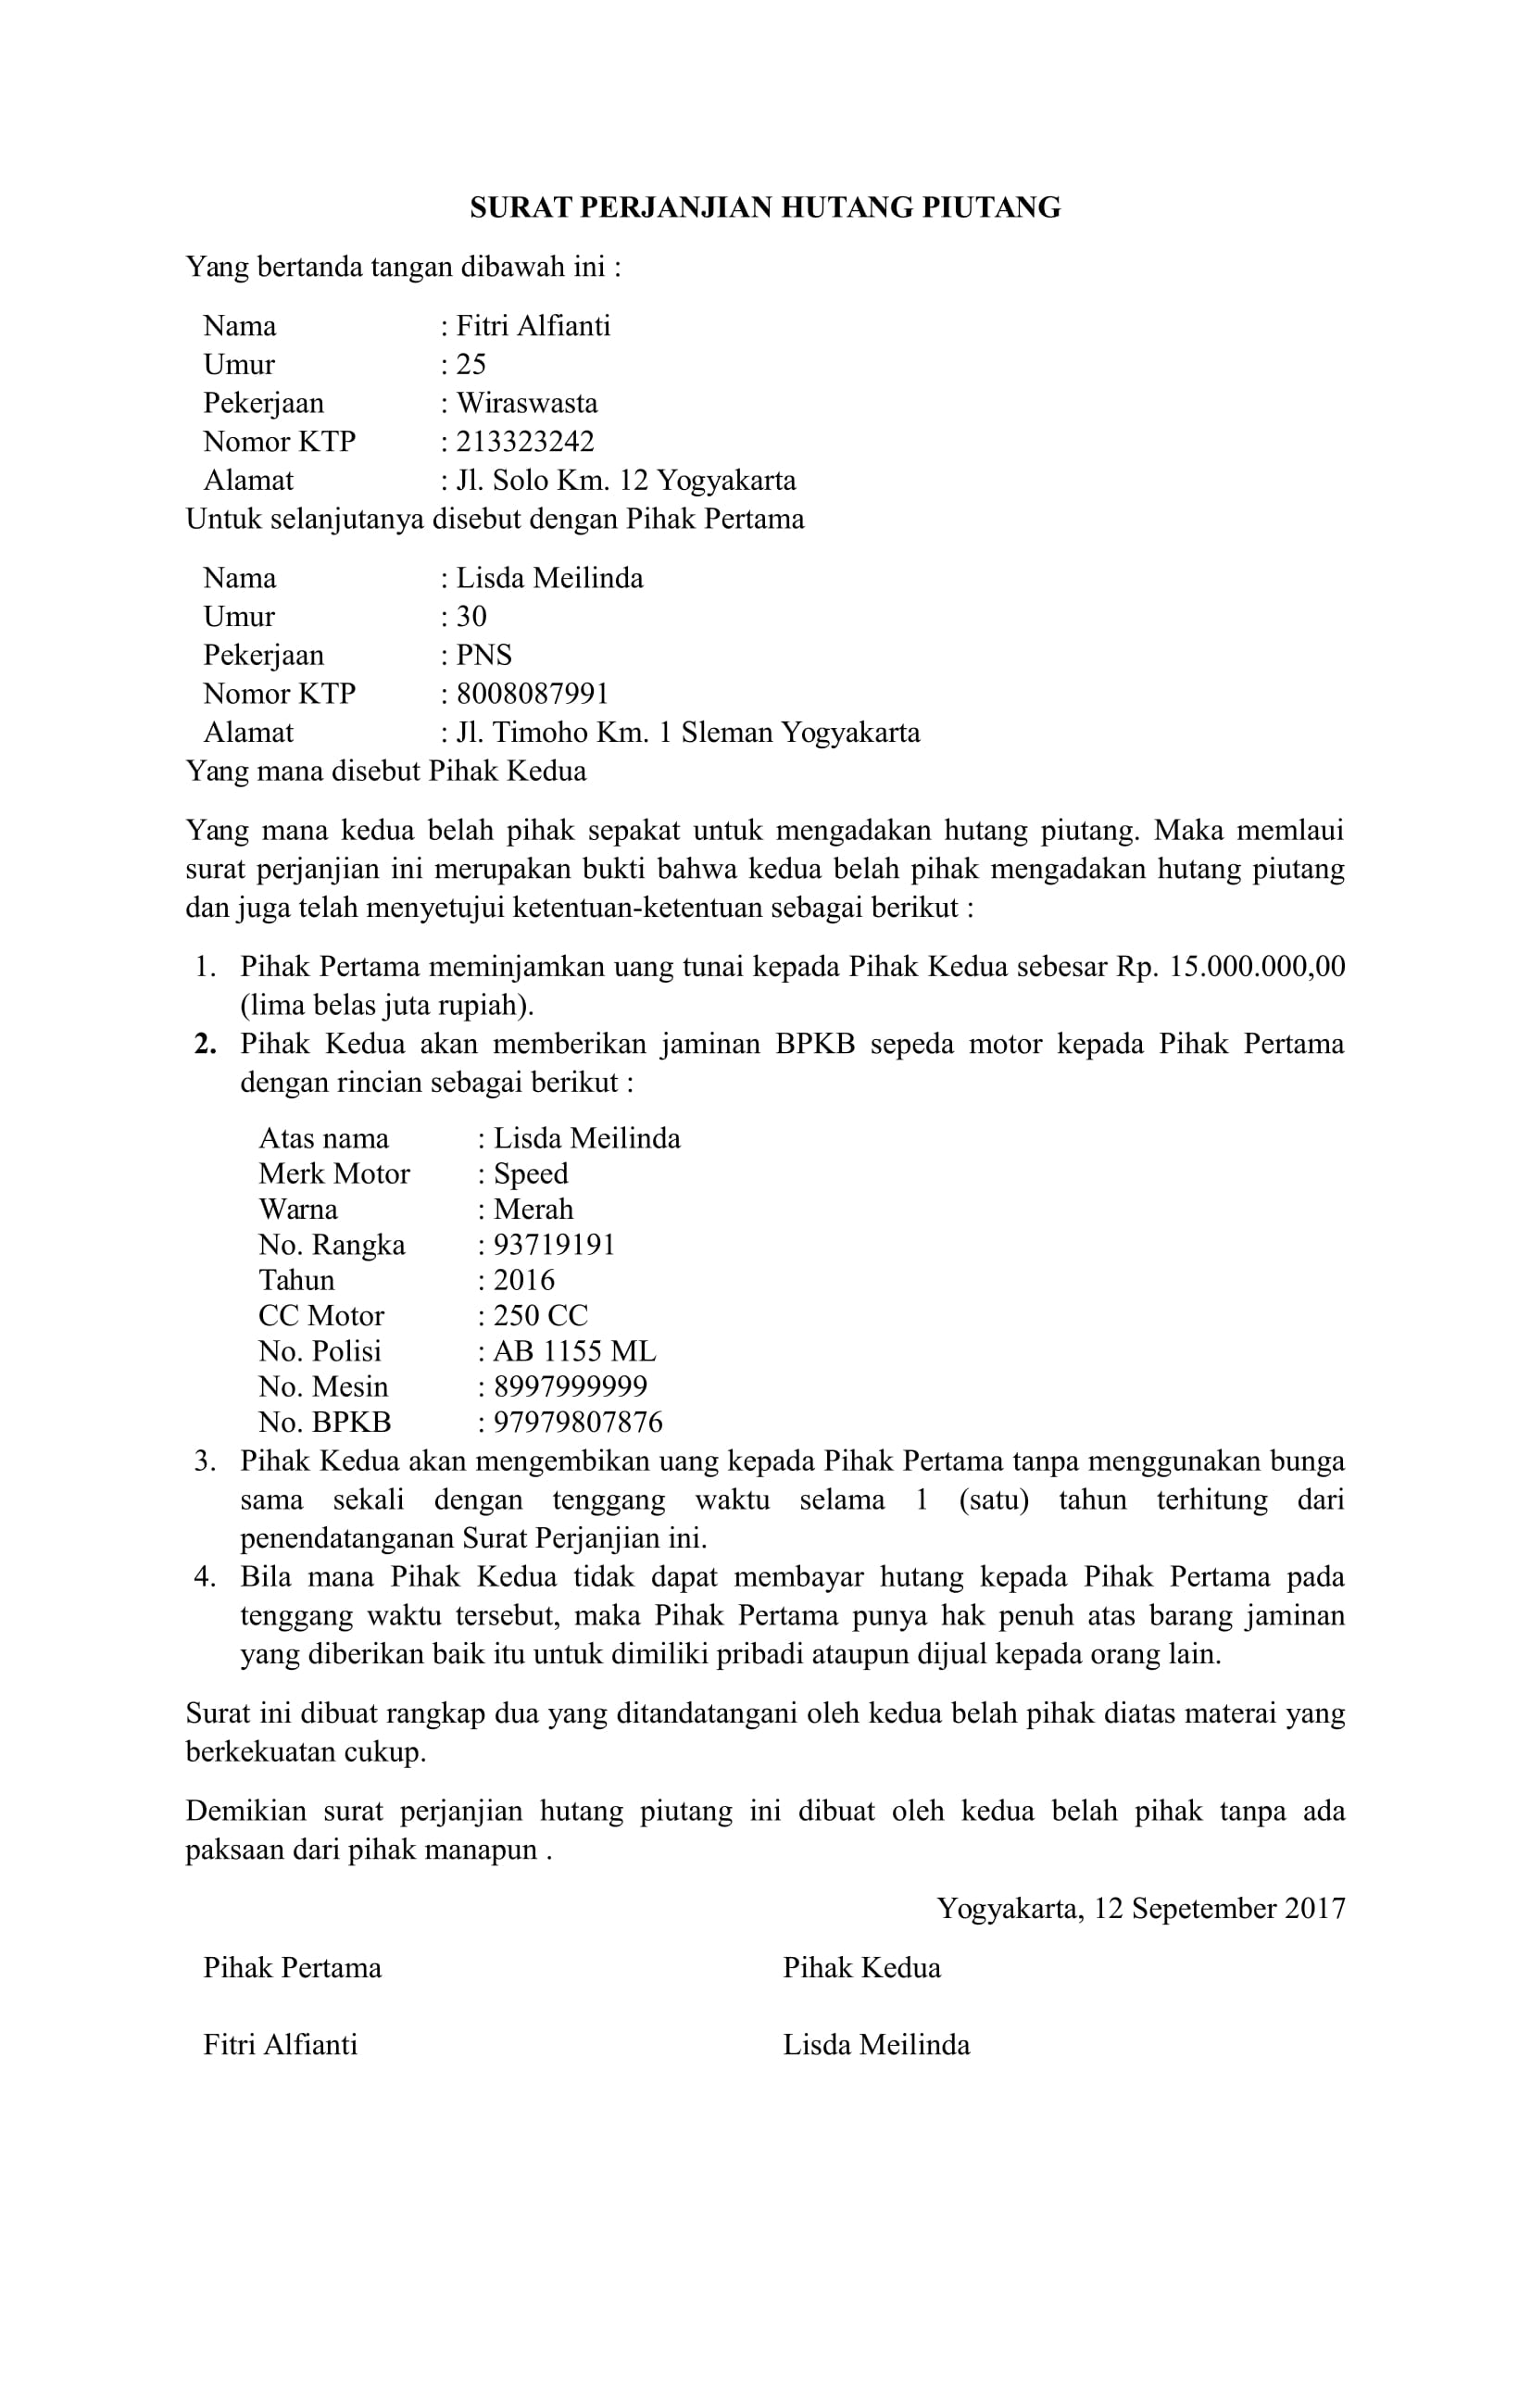 Top Contoh Surat Perjanjian Hutang Piutangyang 90 Guna Inspirasi Desain Surat Perjanjian di post Contoh Surat Perjanjian Hutang Piutangyang